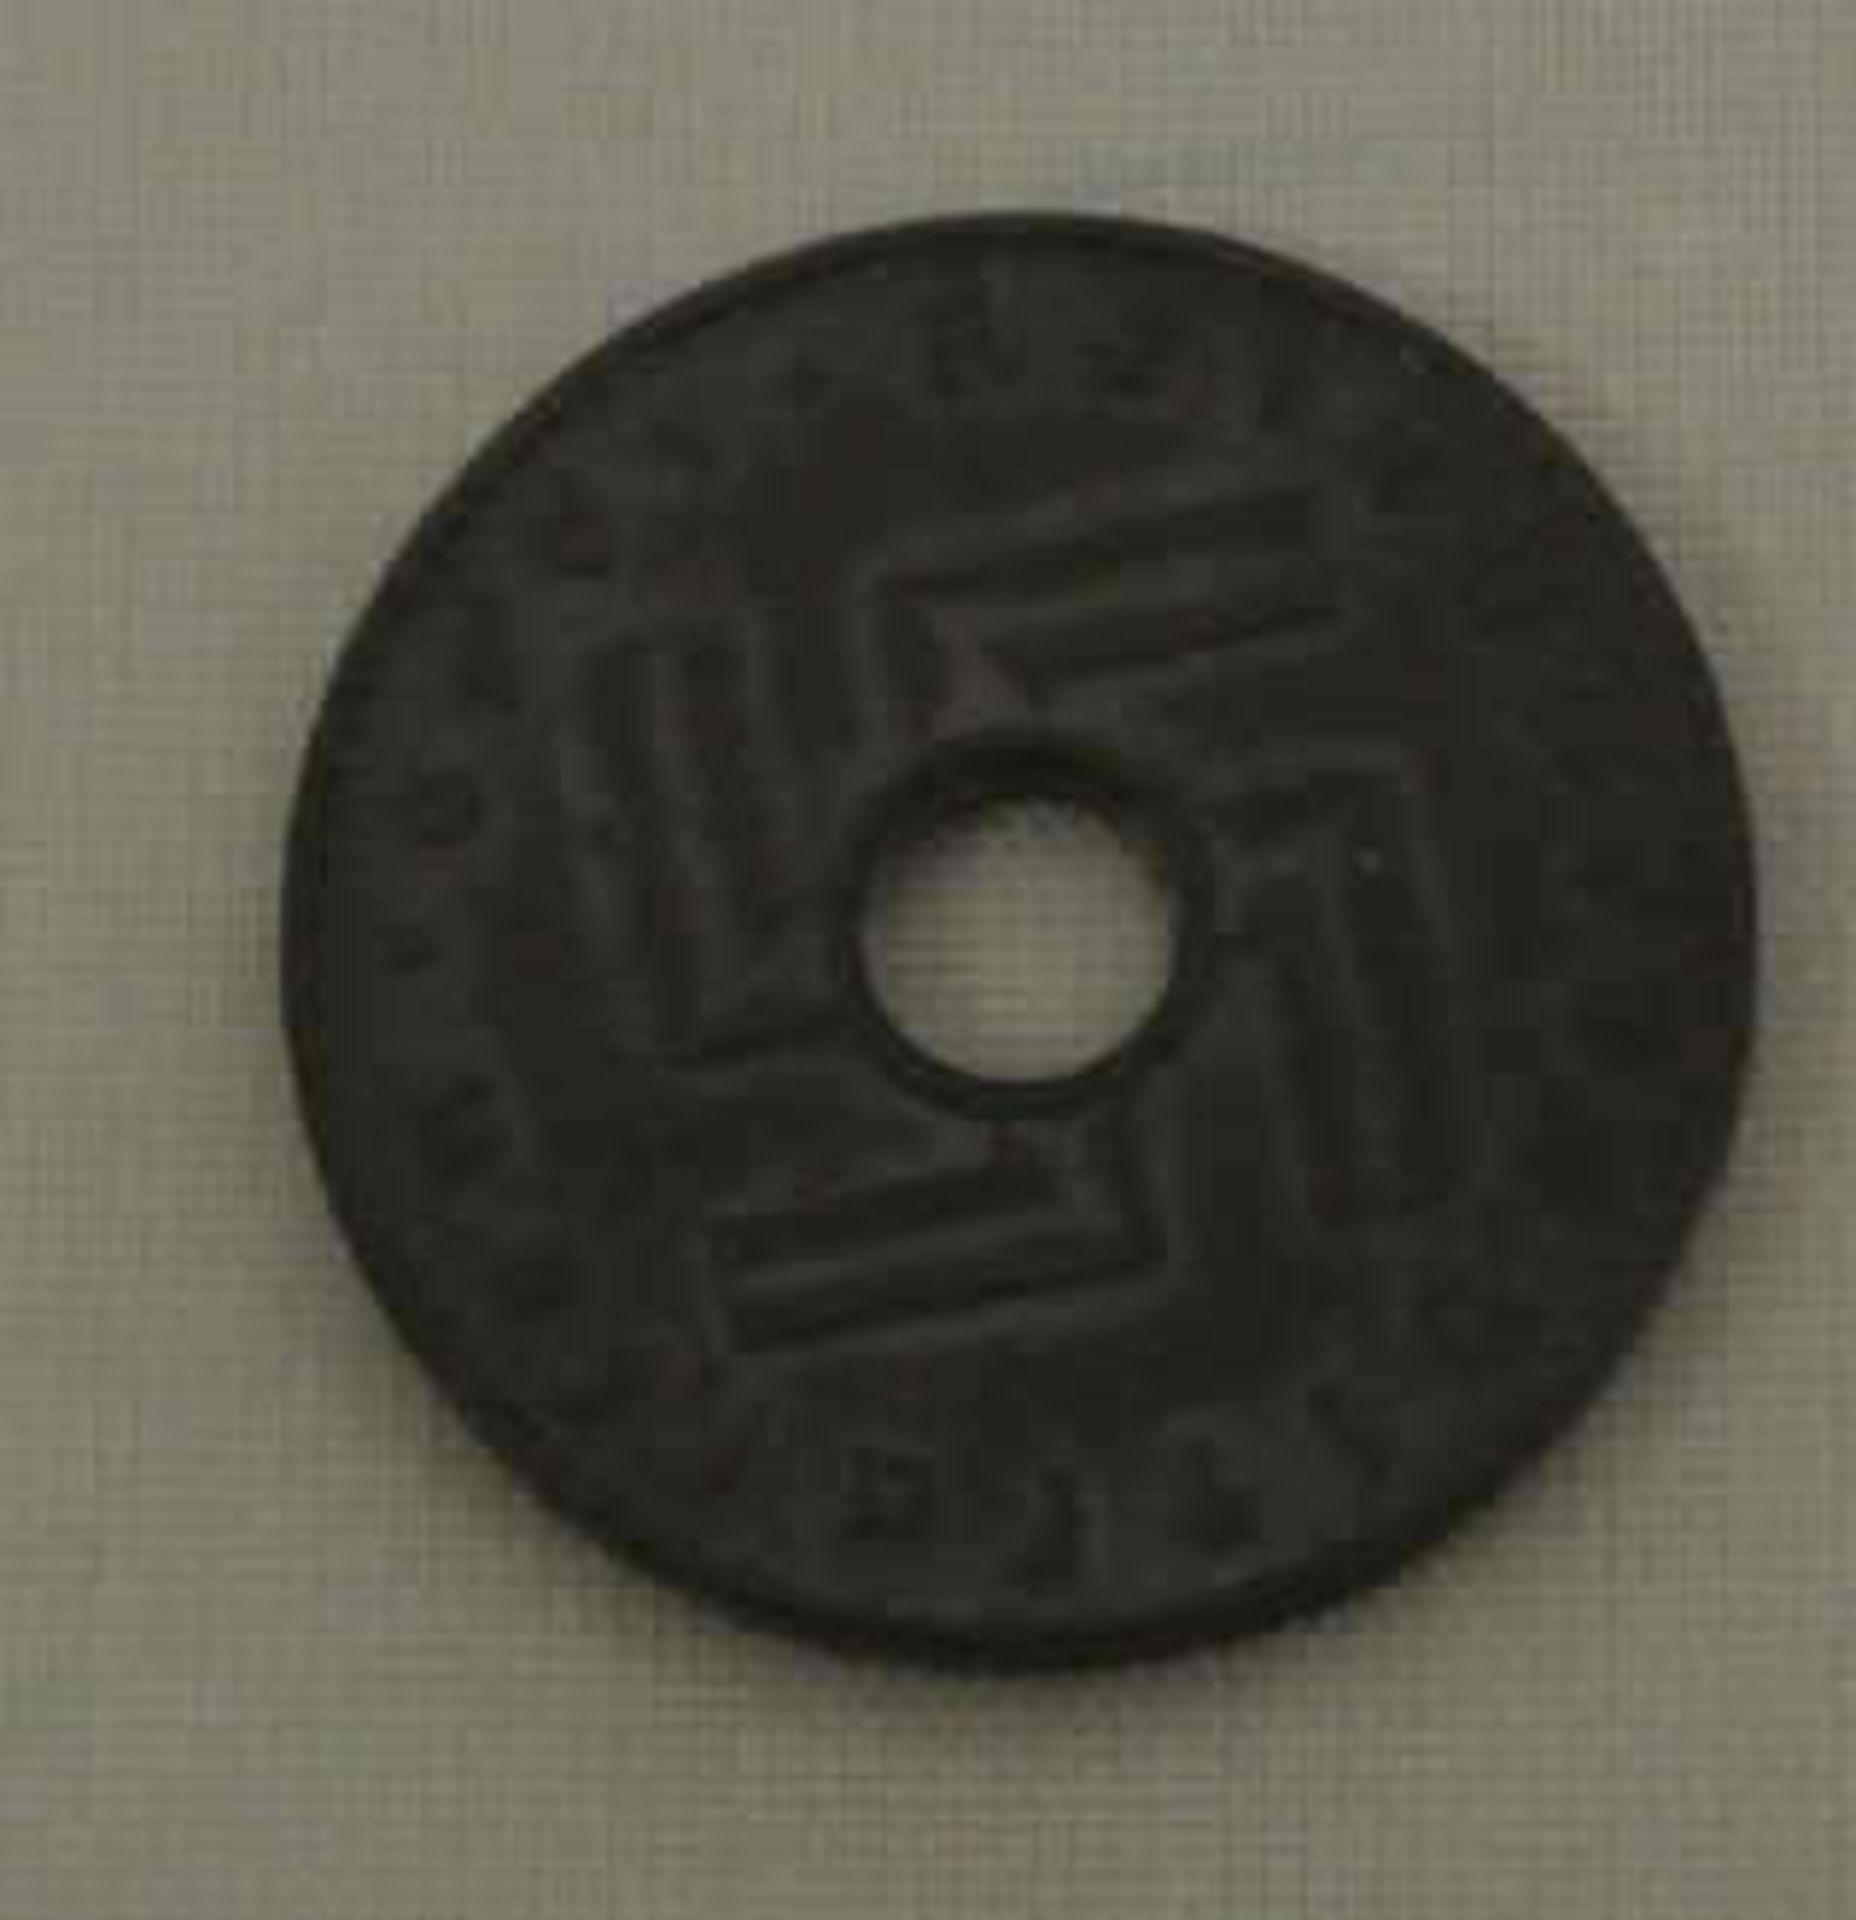 Deutsches Reich 5 Pfennig 1940 A, Reichskreditkasse, sehr selten. Erhaltung: vorzüglich. Jäger Nr. - Bild 2 aus 2